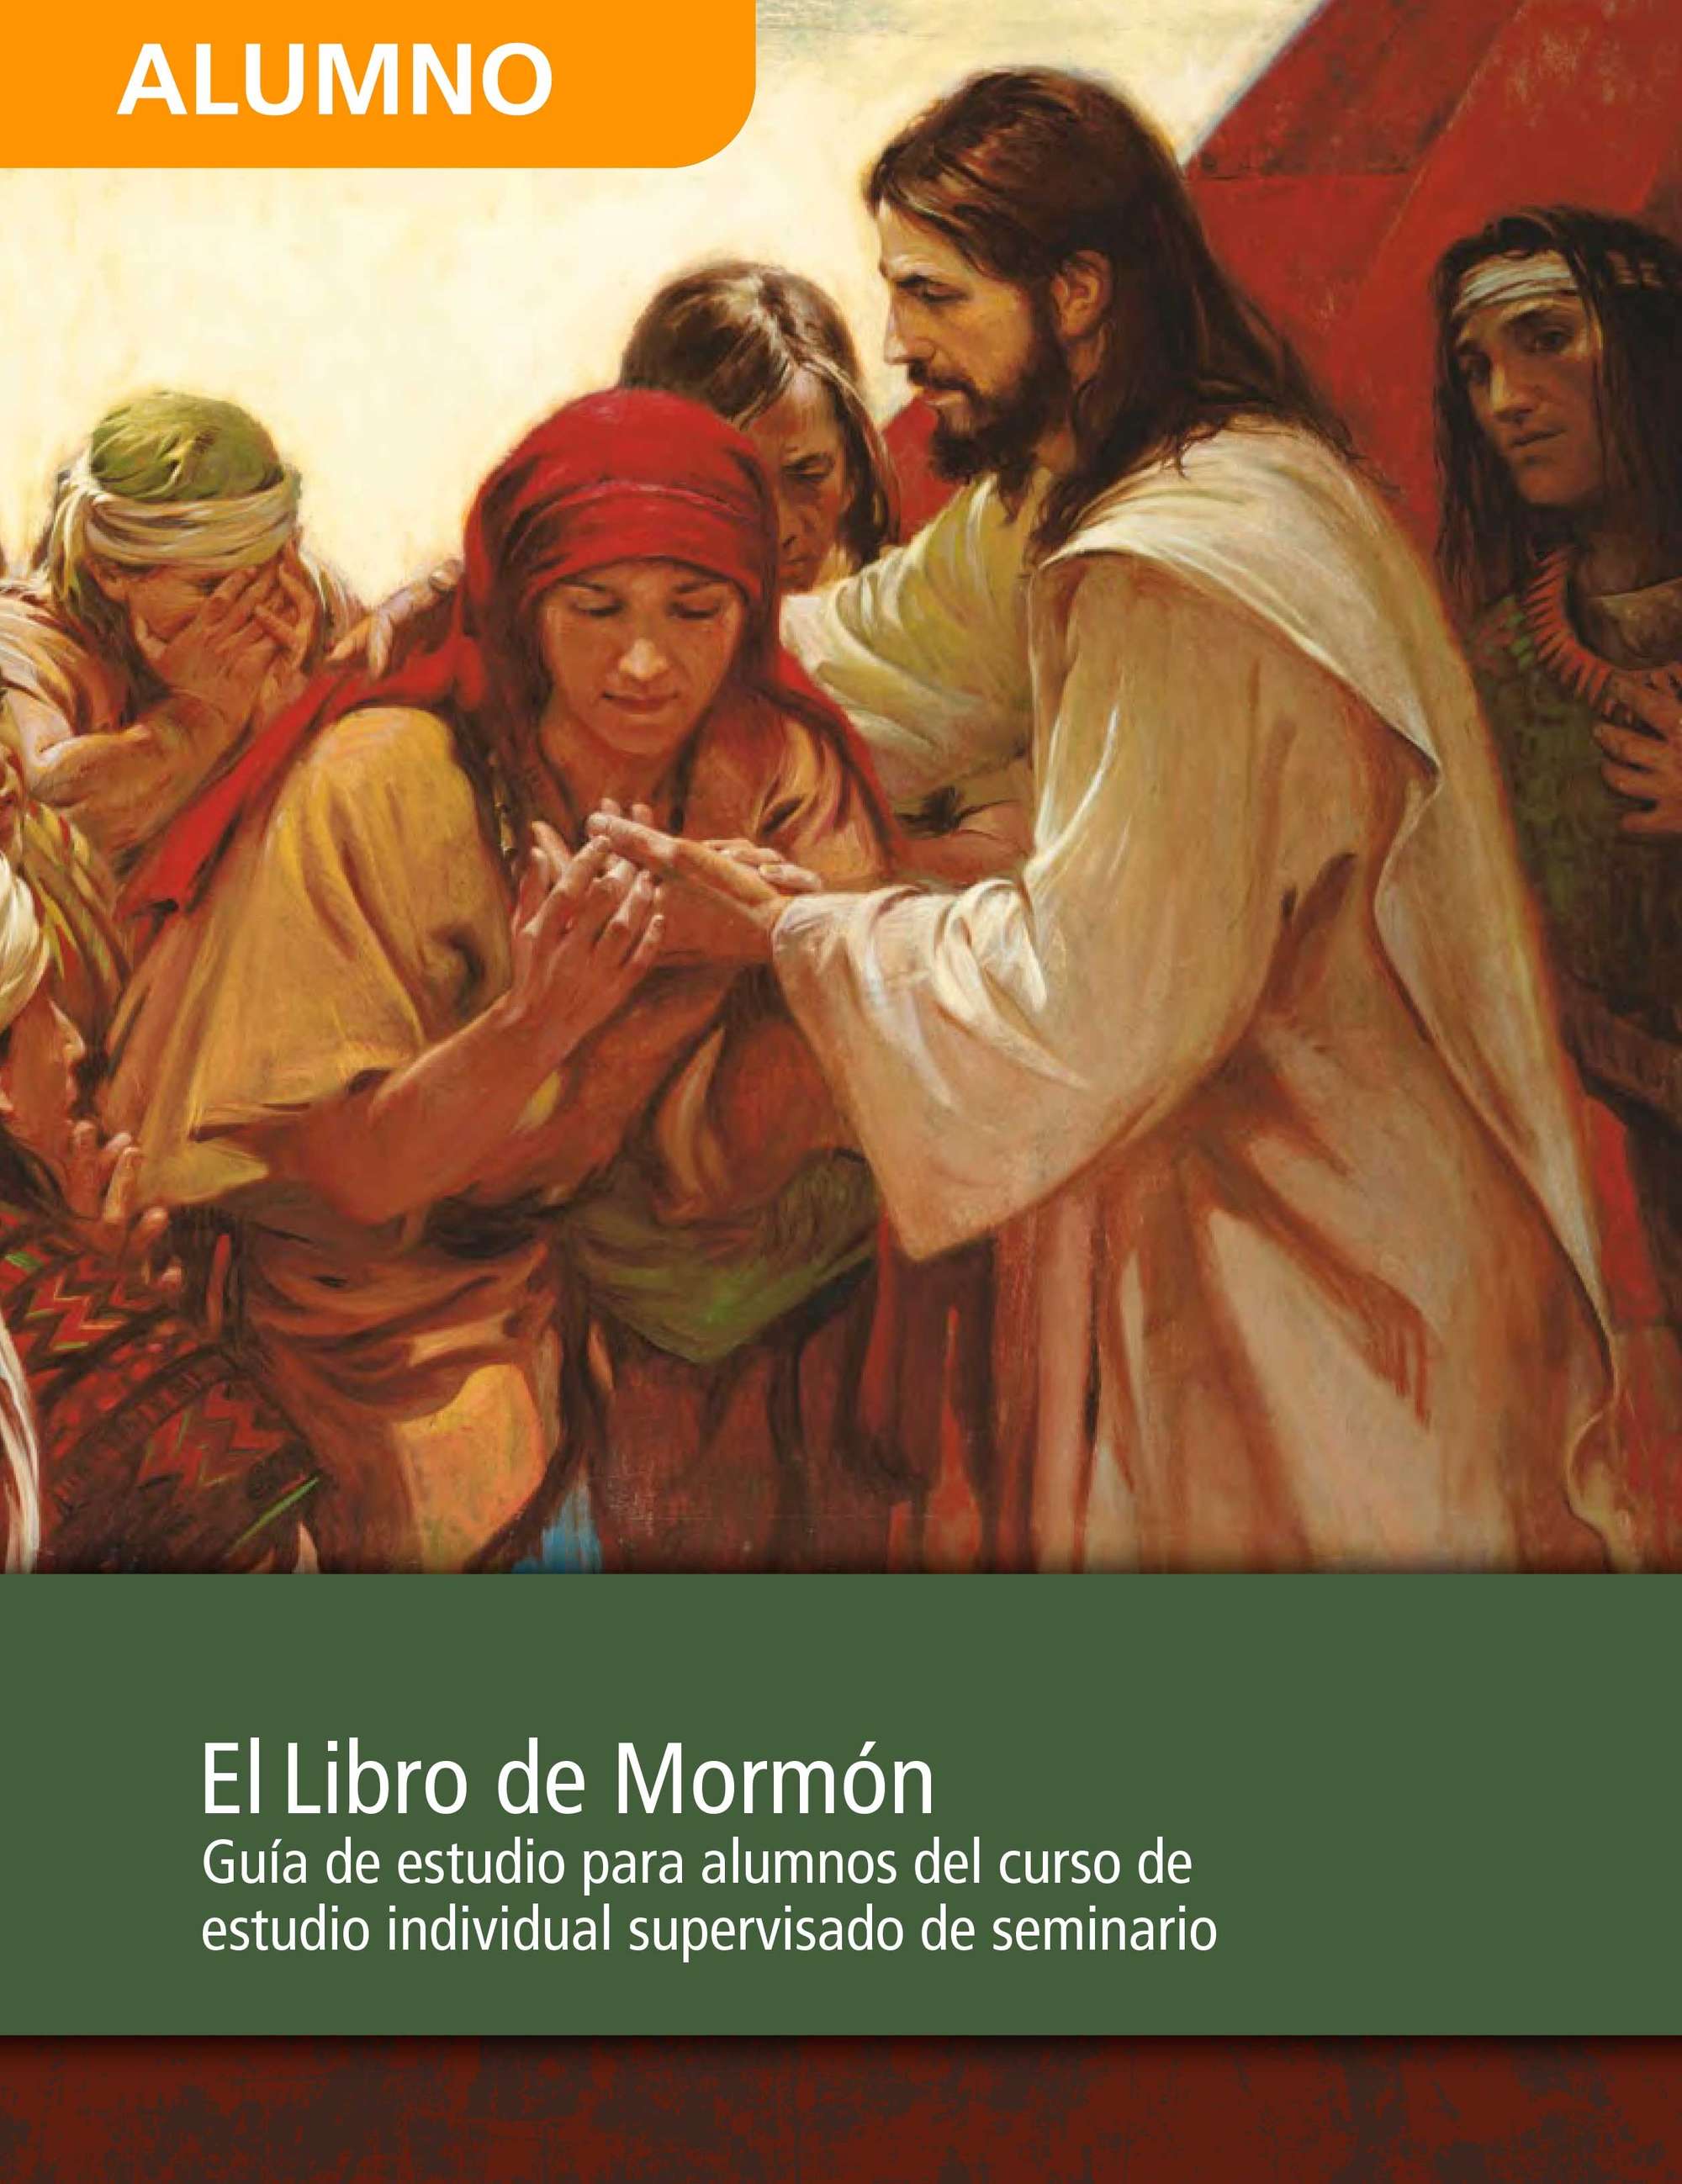 Guía de estudio del Libro de Mormón para alumnos del curso de estudio individual supervisado de Seminario - 2013